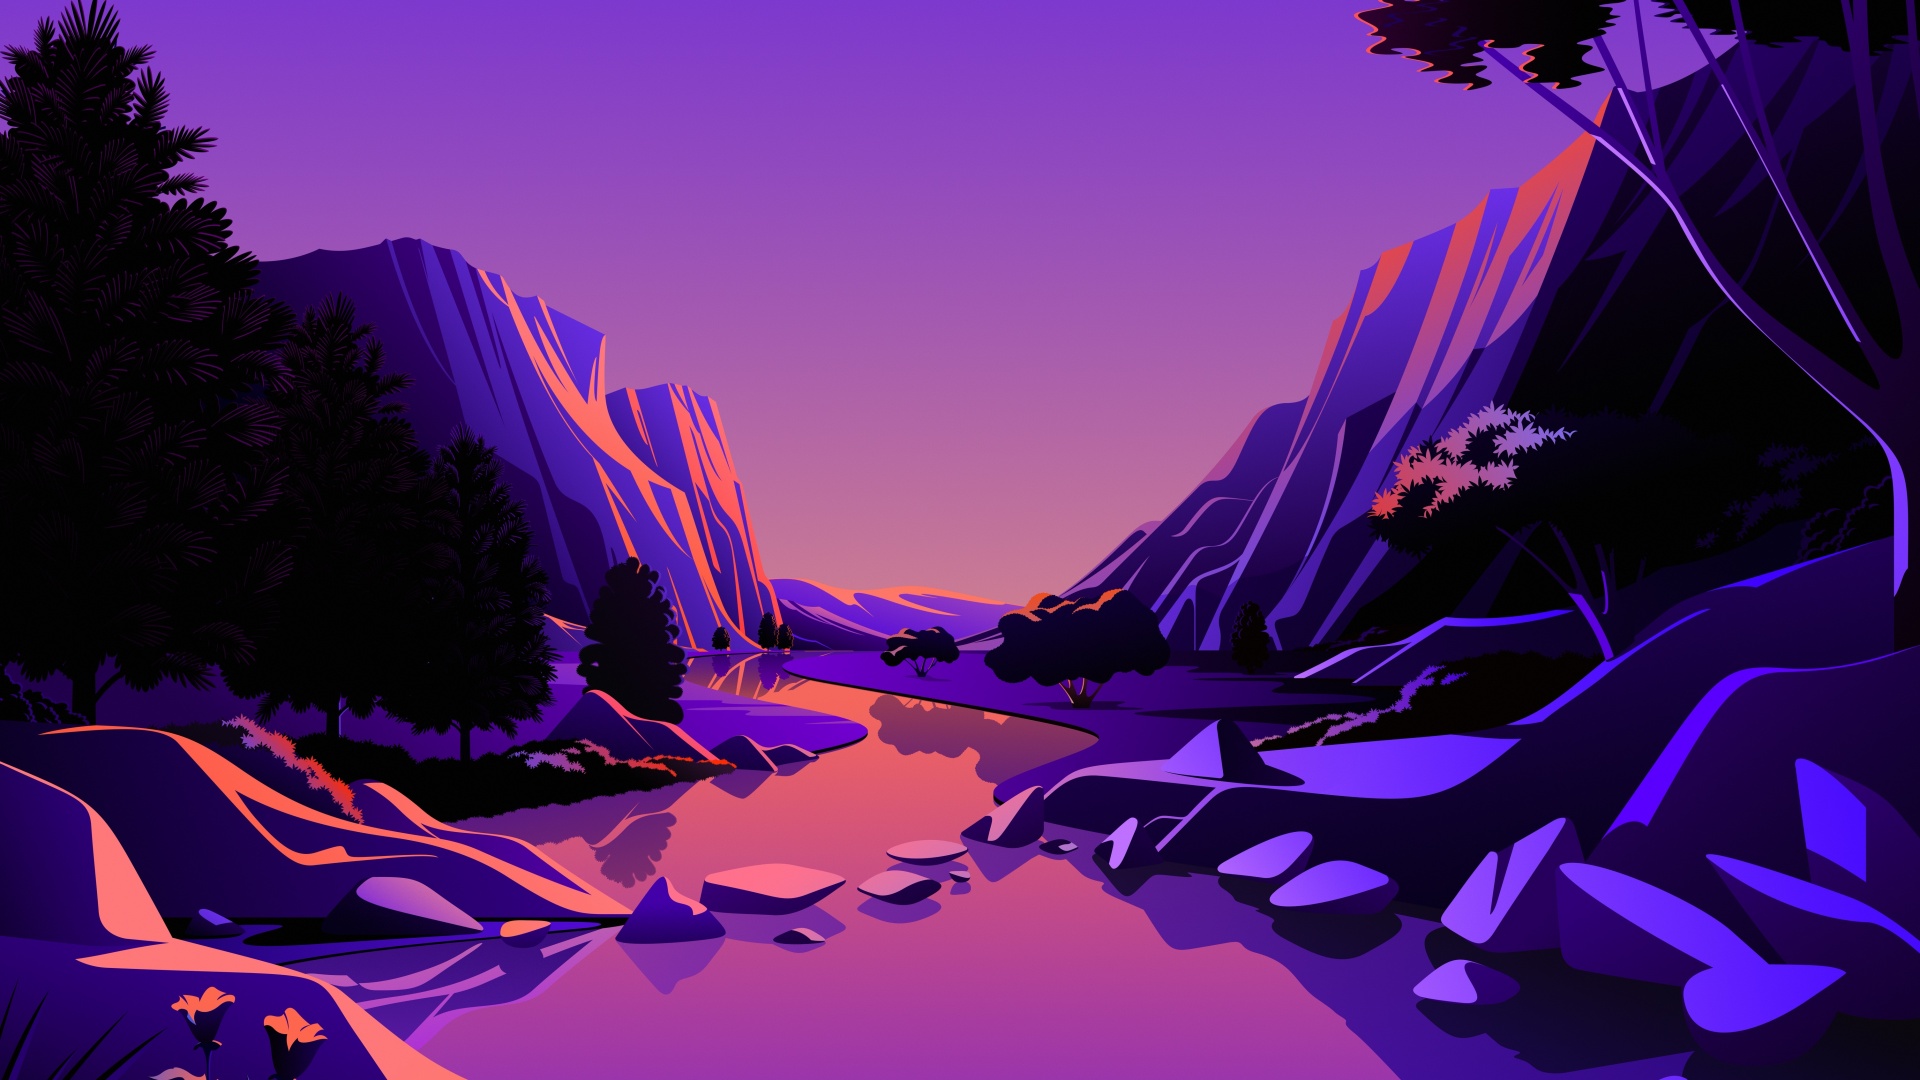 Download wallpaper 3840x2400 mountains peaks dusk purple 4k ultra hd  1610 hd background